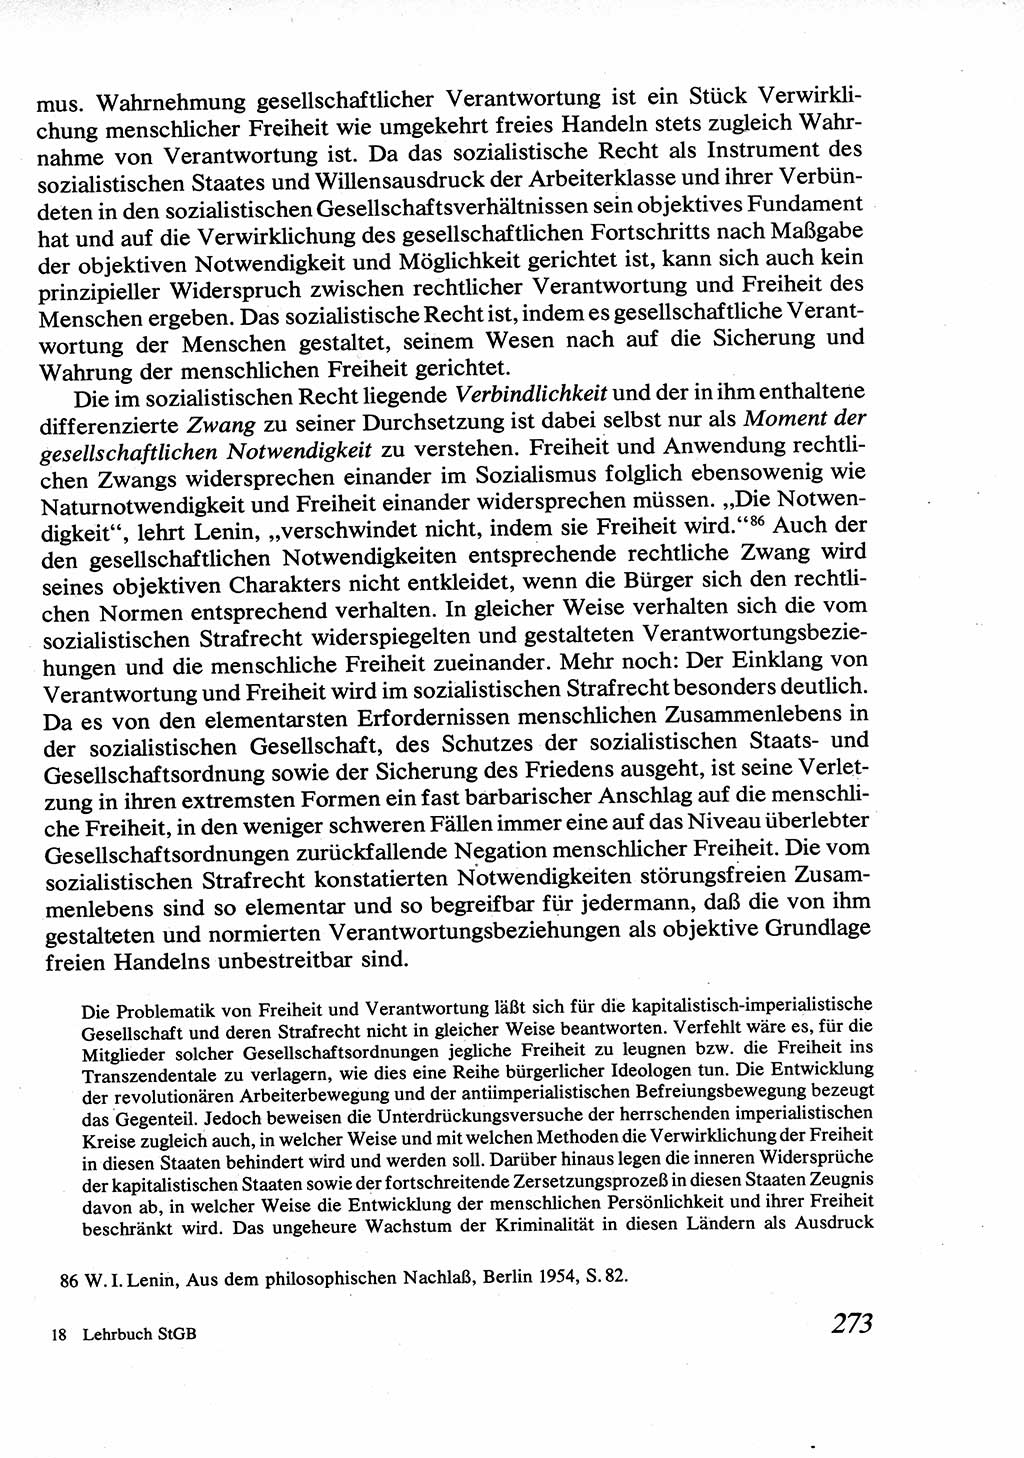 Strafrecht [Deutsche Demokratische Republik (DDR)], Allgemeiner Teil, Lehrbuch 1976, Seite 273 (Strafr. DDR AT Lb. 1976, S. 273)